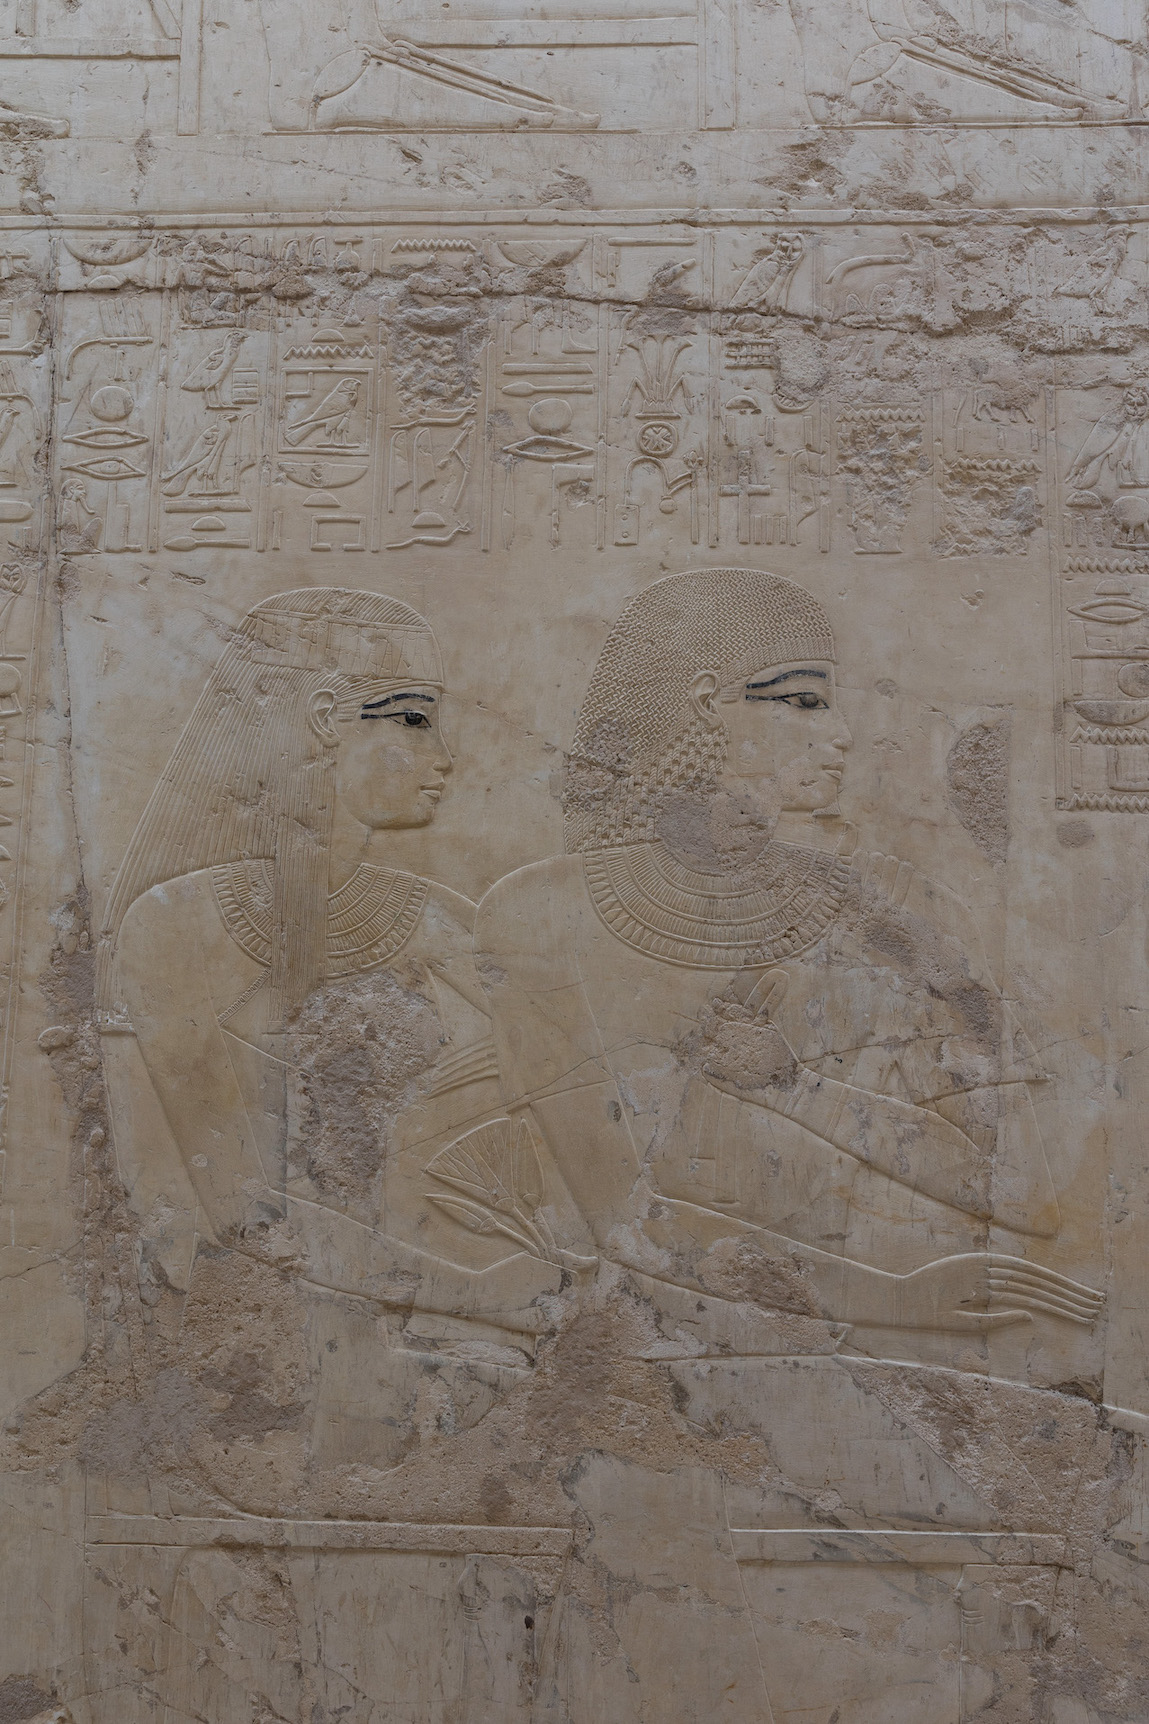 Reiseziele Ägypten Tombs of the Nobels Grabkammer Luxor Sehenswürdigkeiten Geschichte